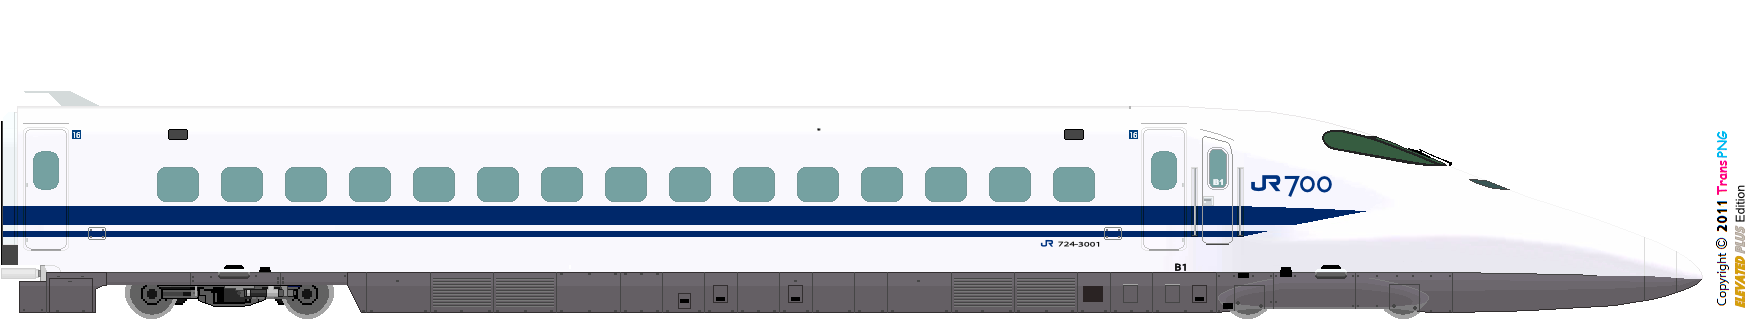 [9012] West Japan Railway 52287845884_a66d064234_o